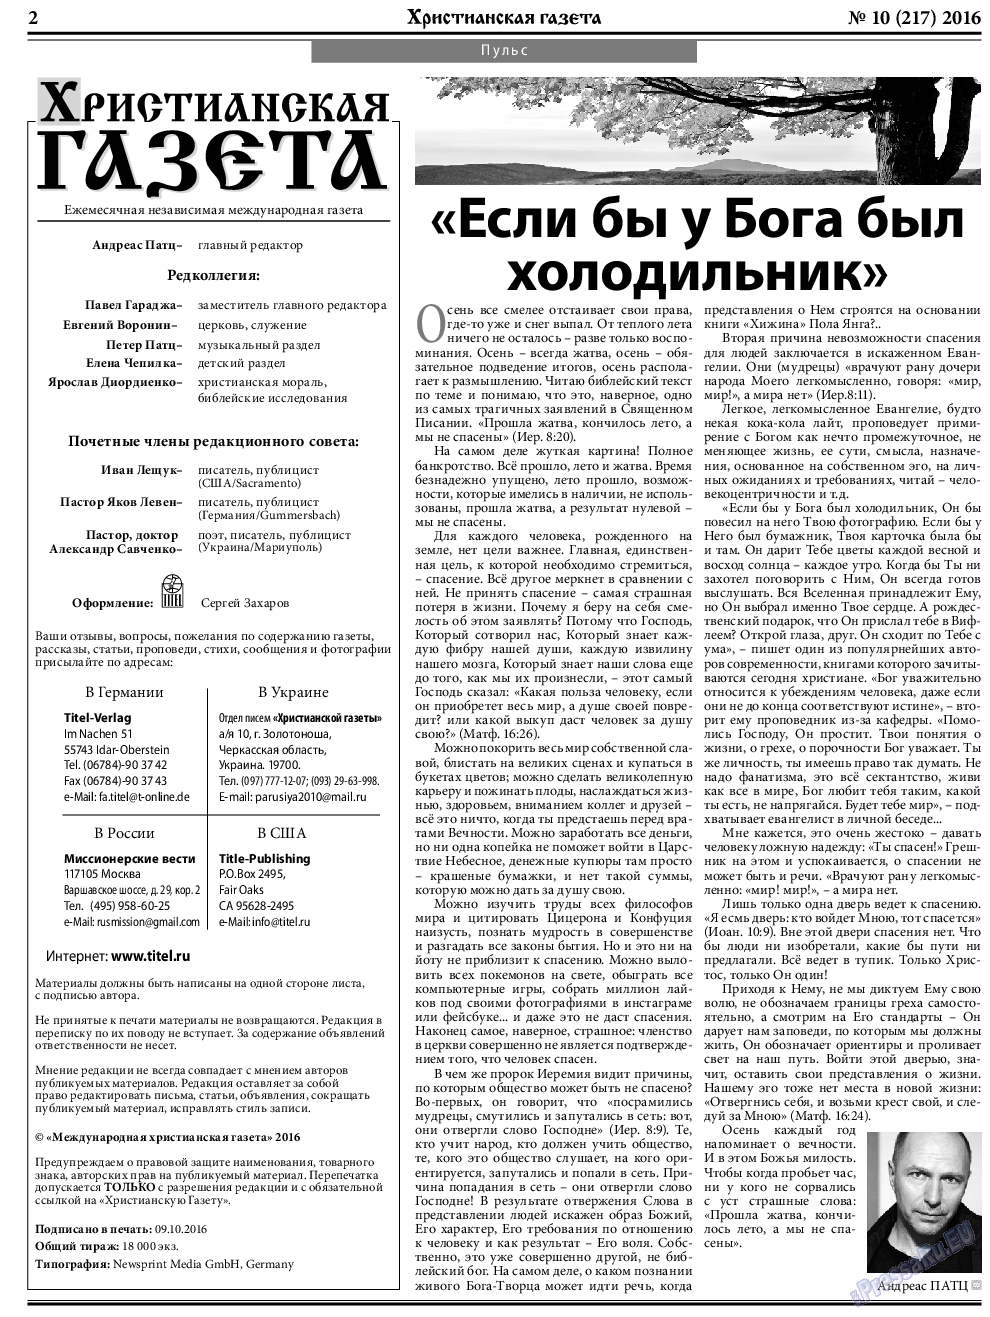 Христианская газета, газета. 2016 №10 стр.2